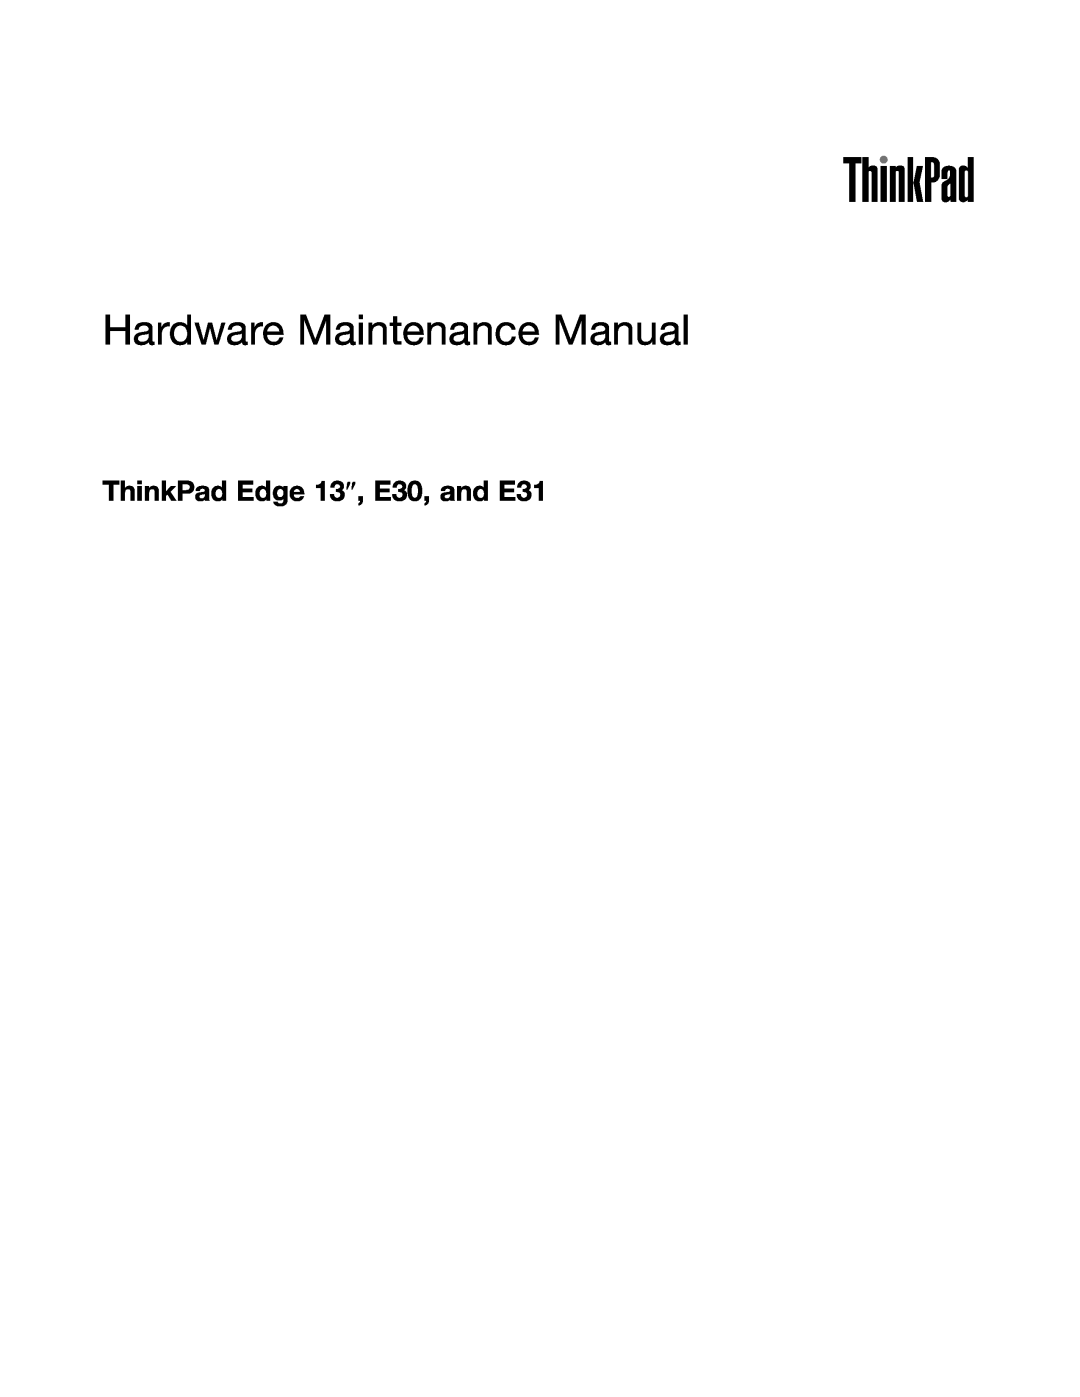 Lenovo EDGE 13 manual ThinkPad Edge 13″, E30, and E31, Hardware Maintenance Manual 